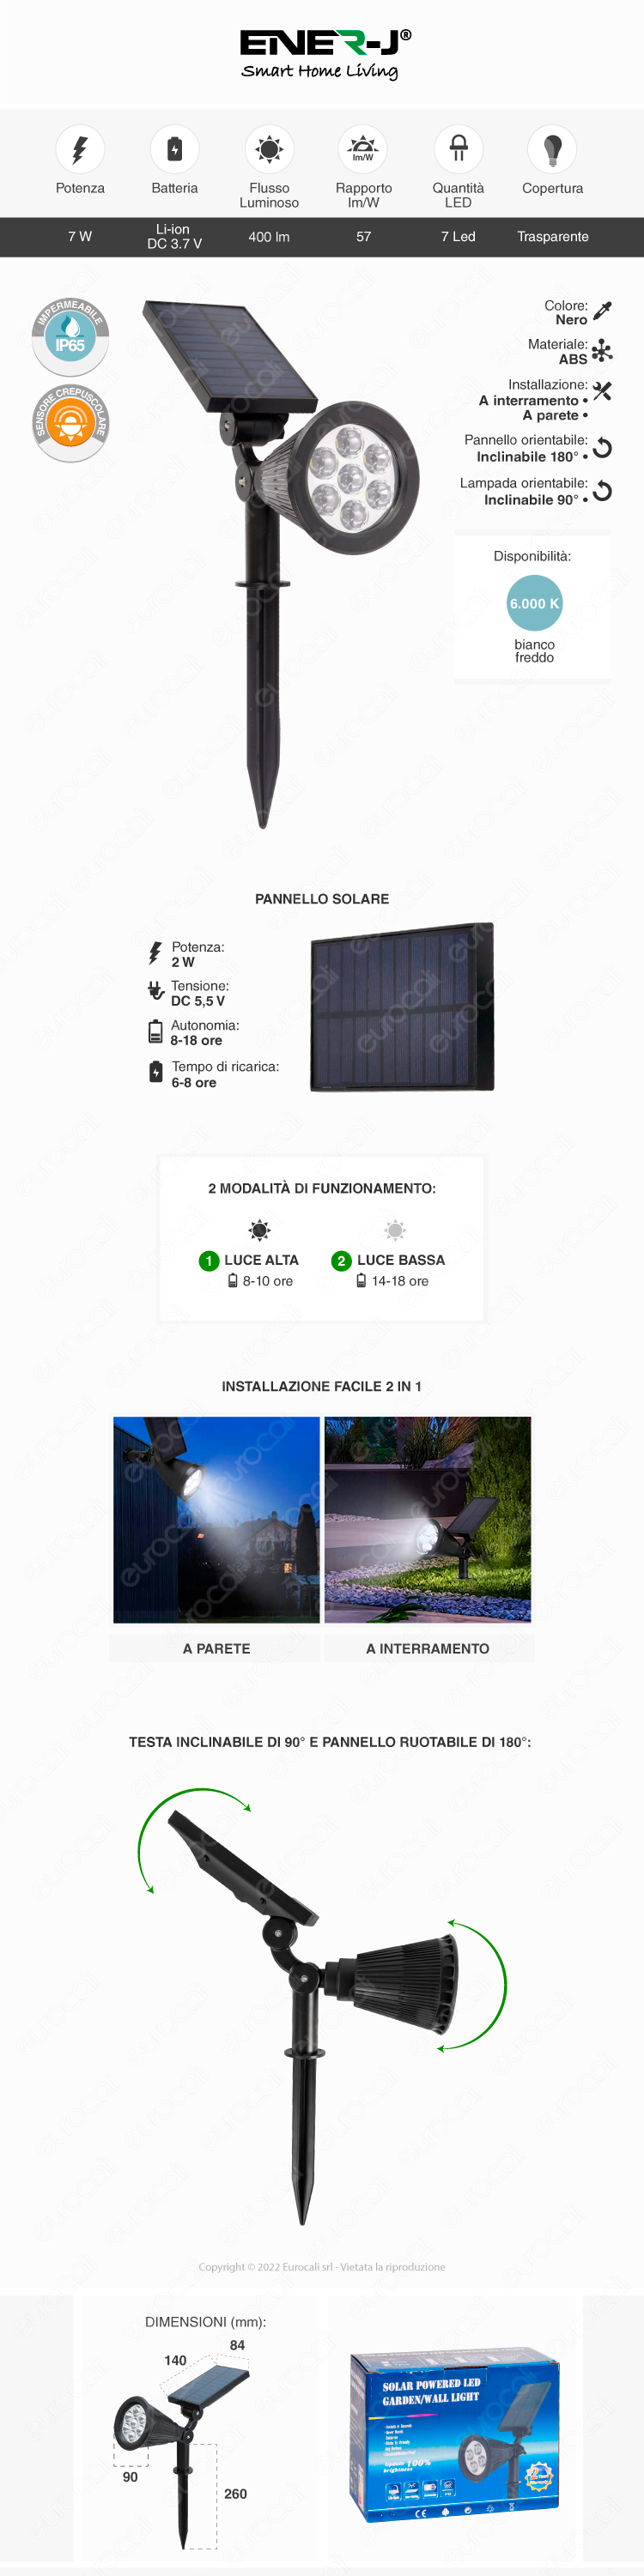 ener-j faretto giardino led pannello solare sensore crepuscolare 7w ip65 nero